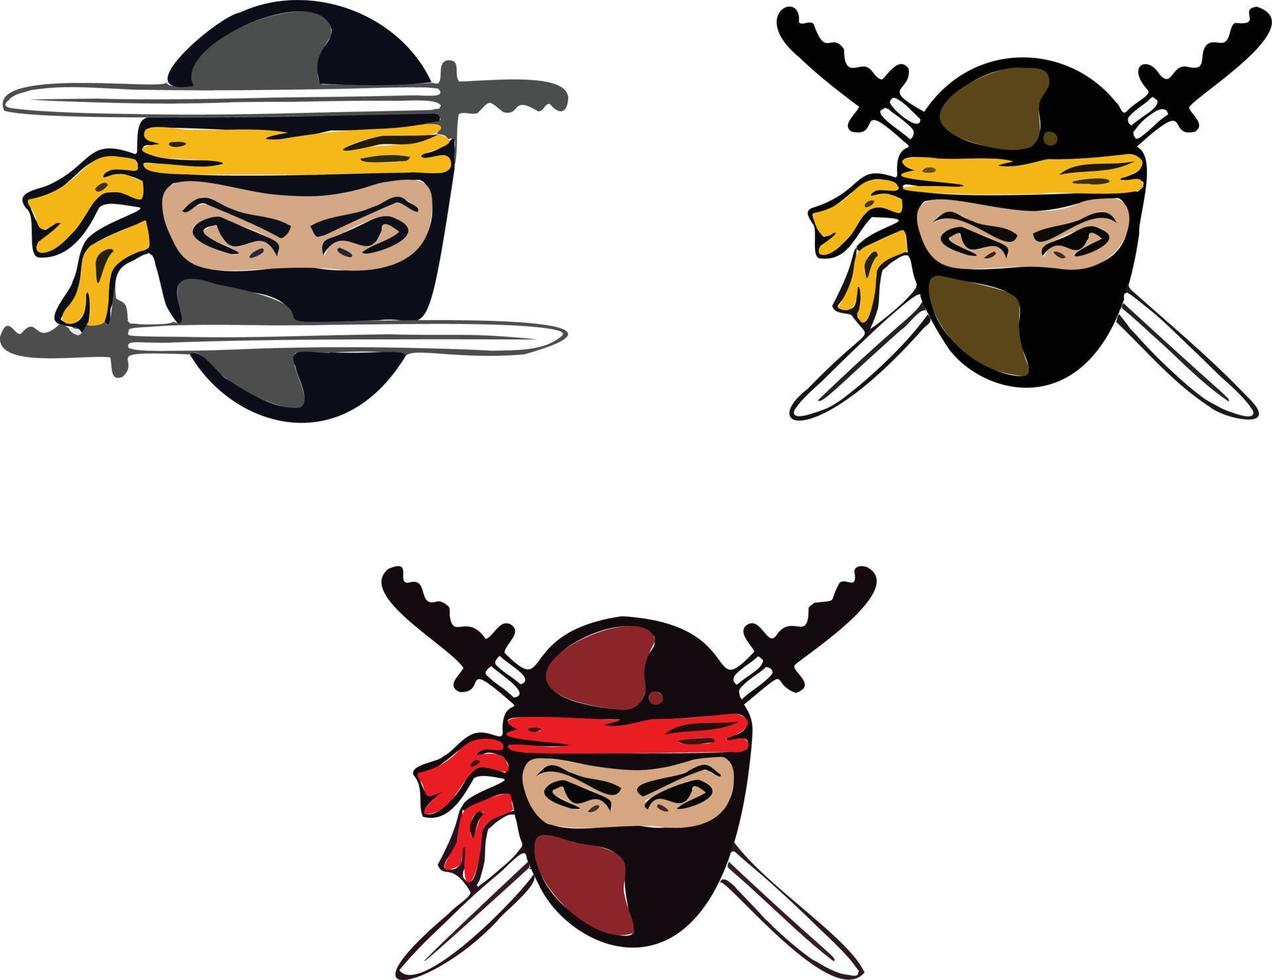 insignia, logotipo ninja, guerras de espadas, asesino, símbolo. vector